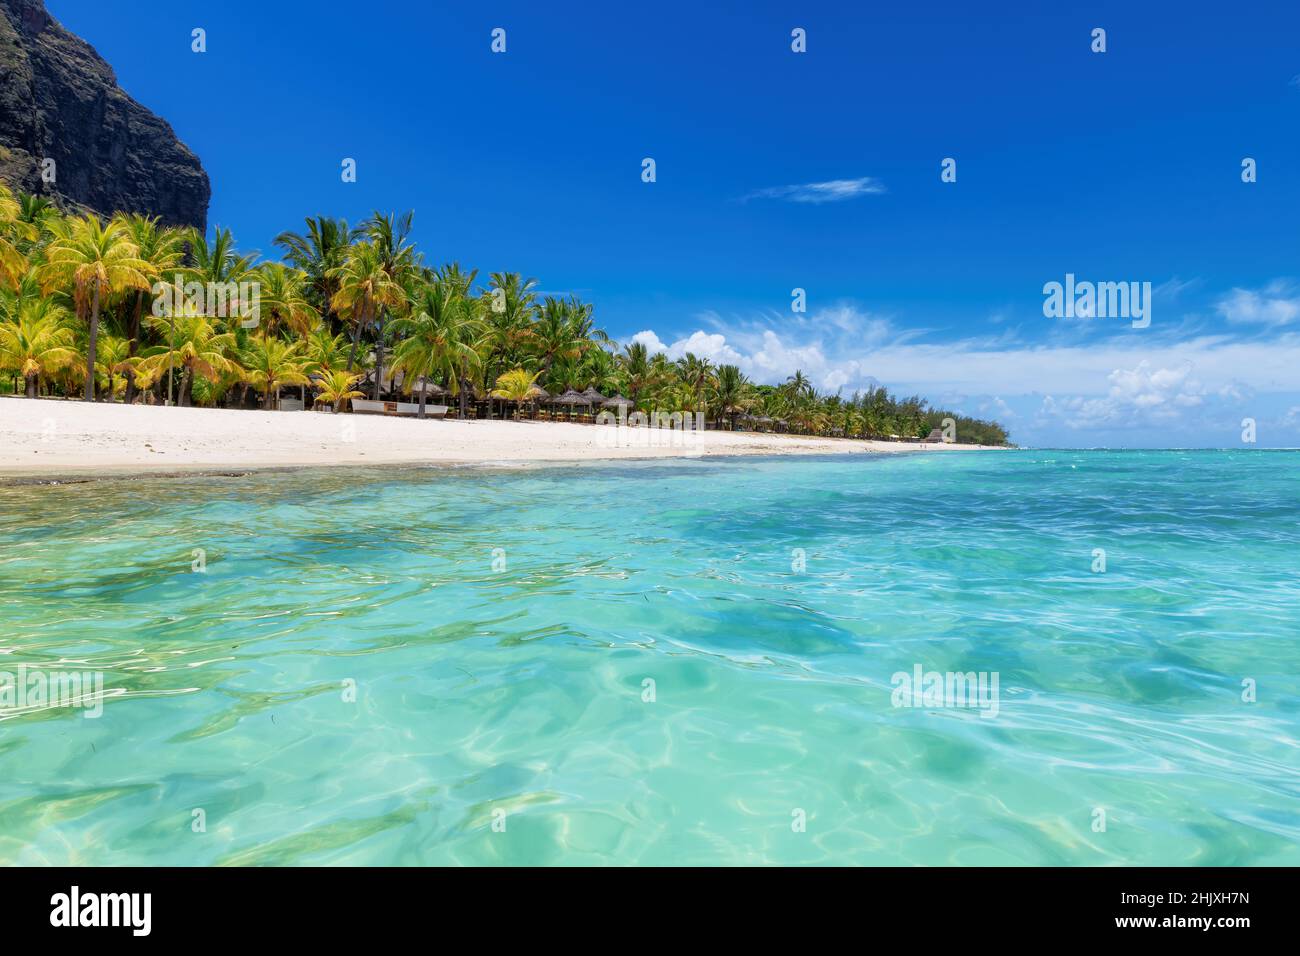 Schöner Le Morne Strand mit Palmen vom tropischen Meer auf Mauritius Insel. Stockfoto